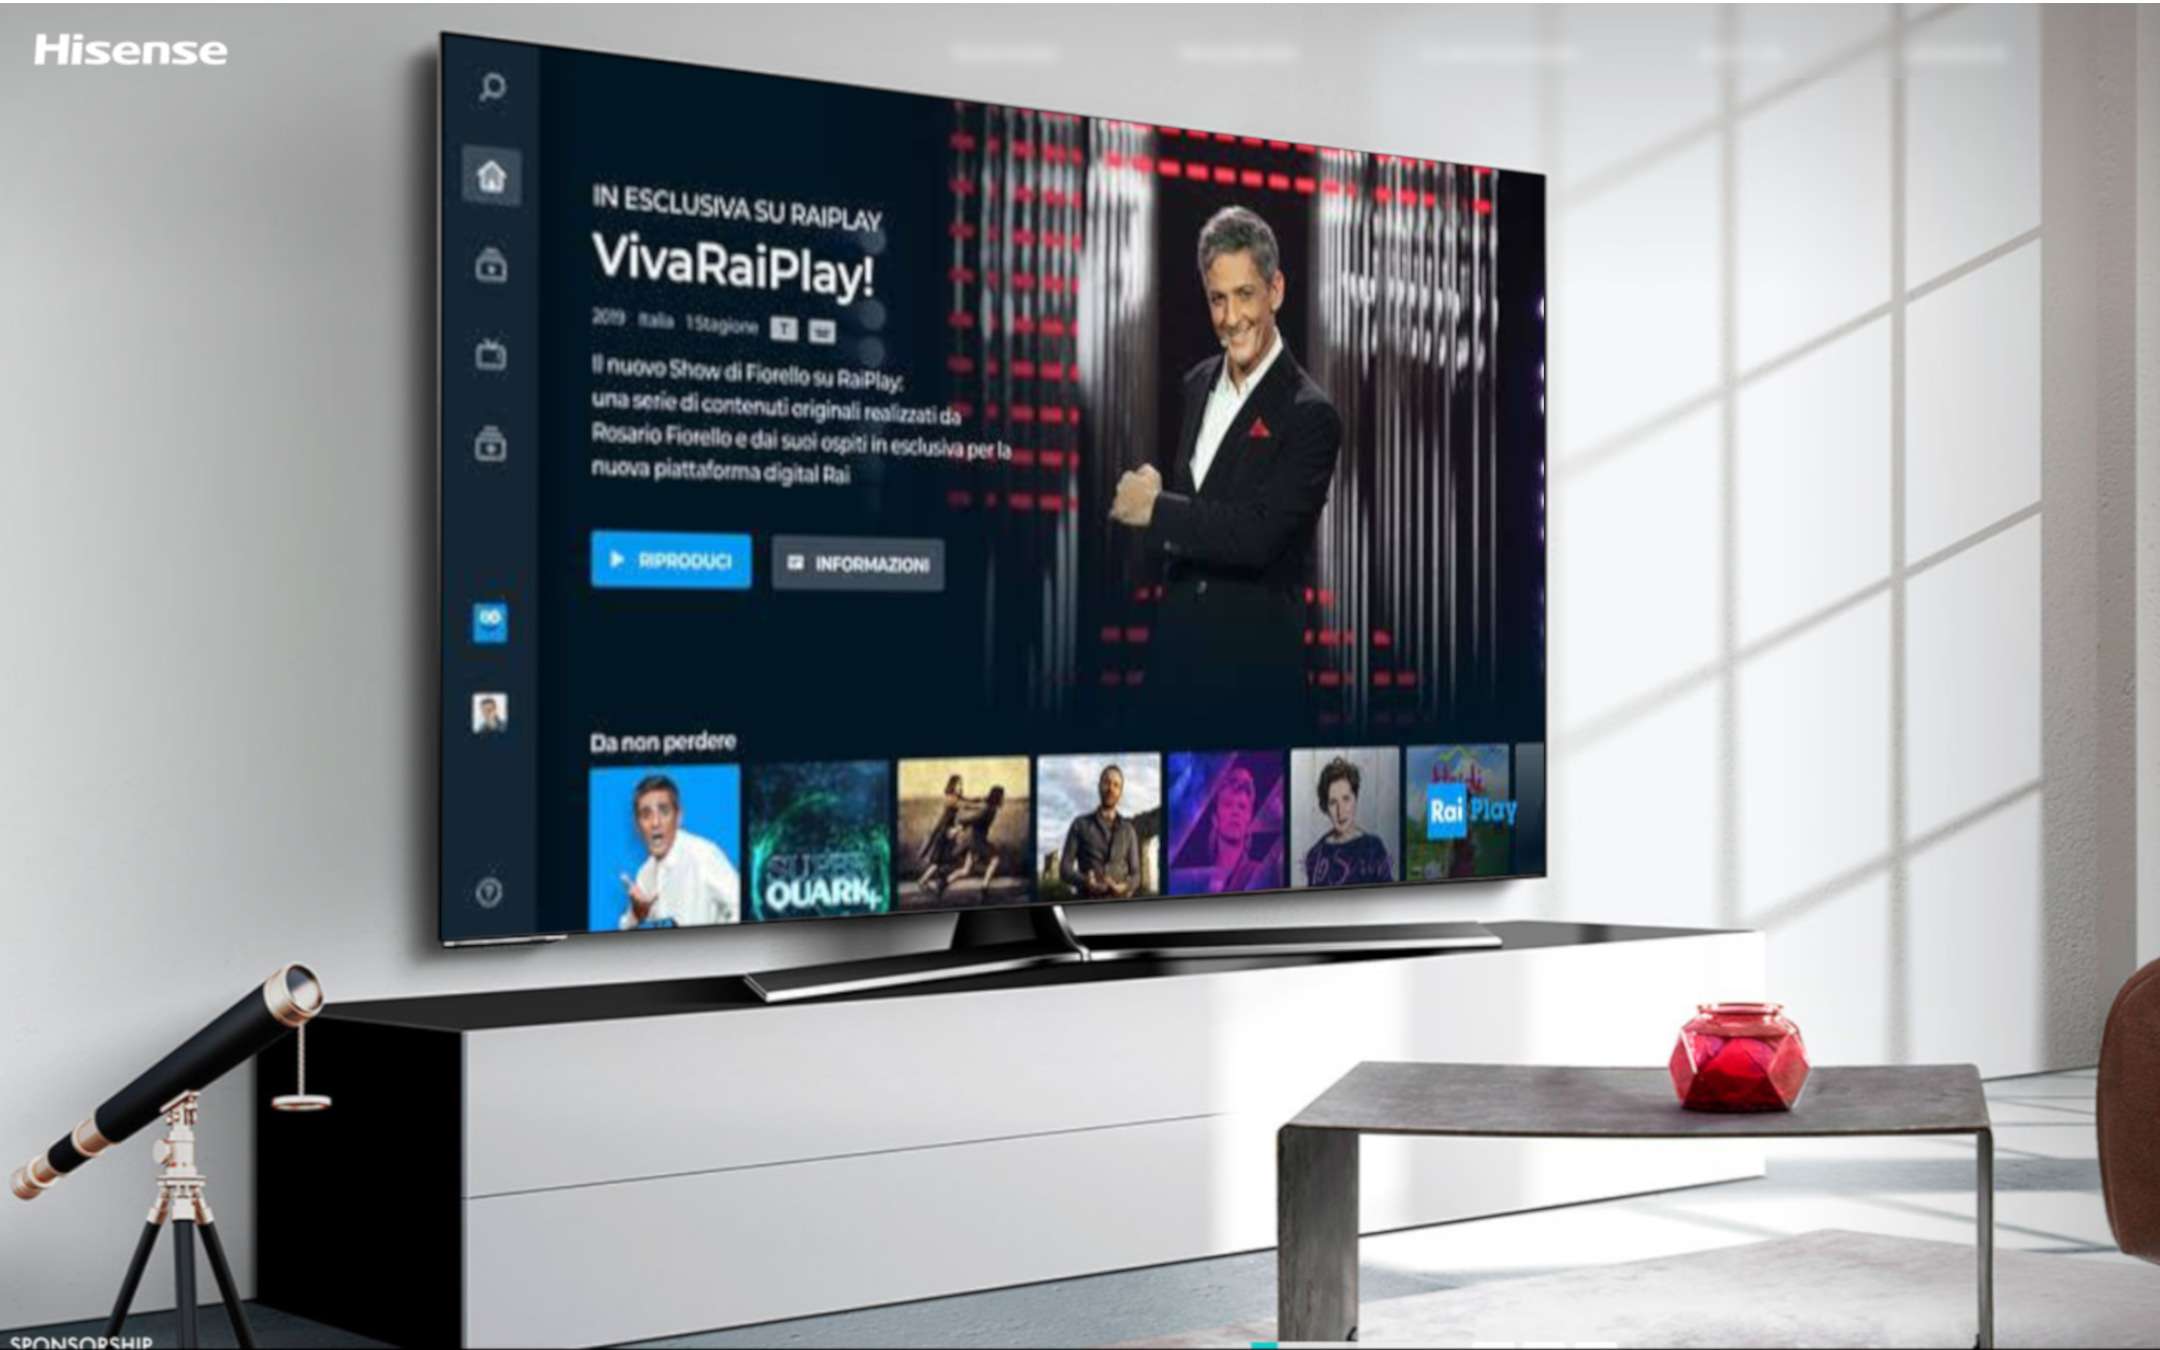 Smart TV Hisense: RaiPlay è nel telecomando adesso